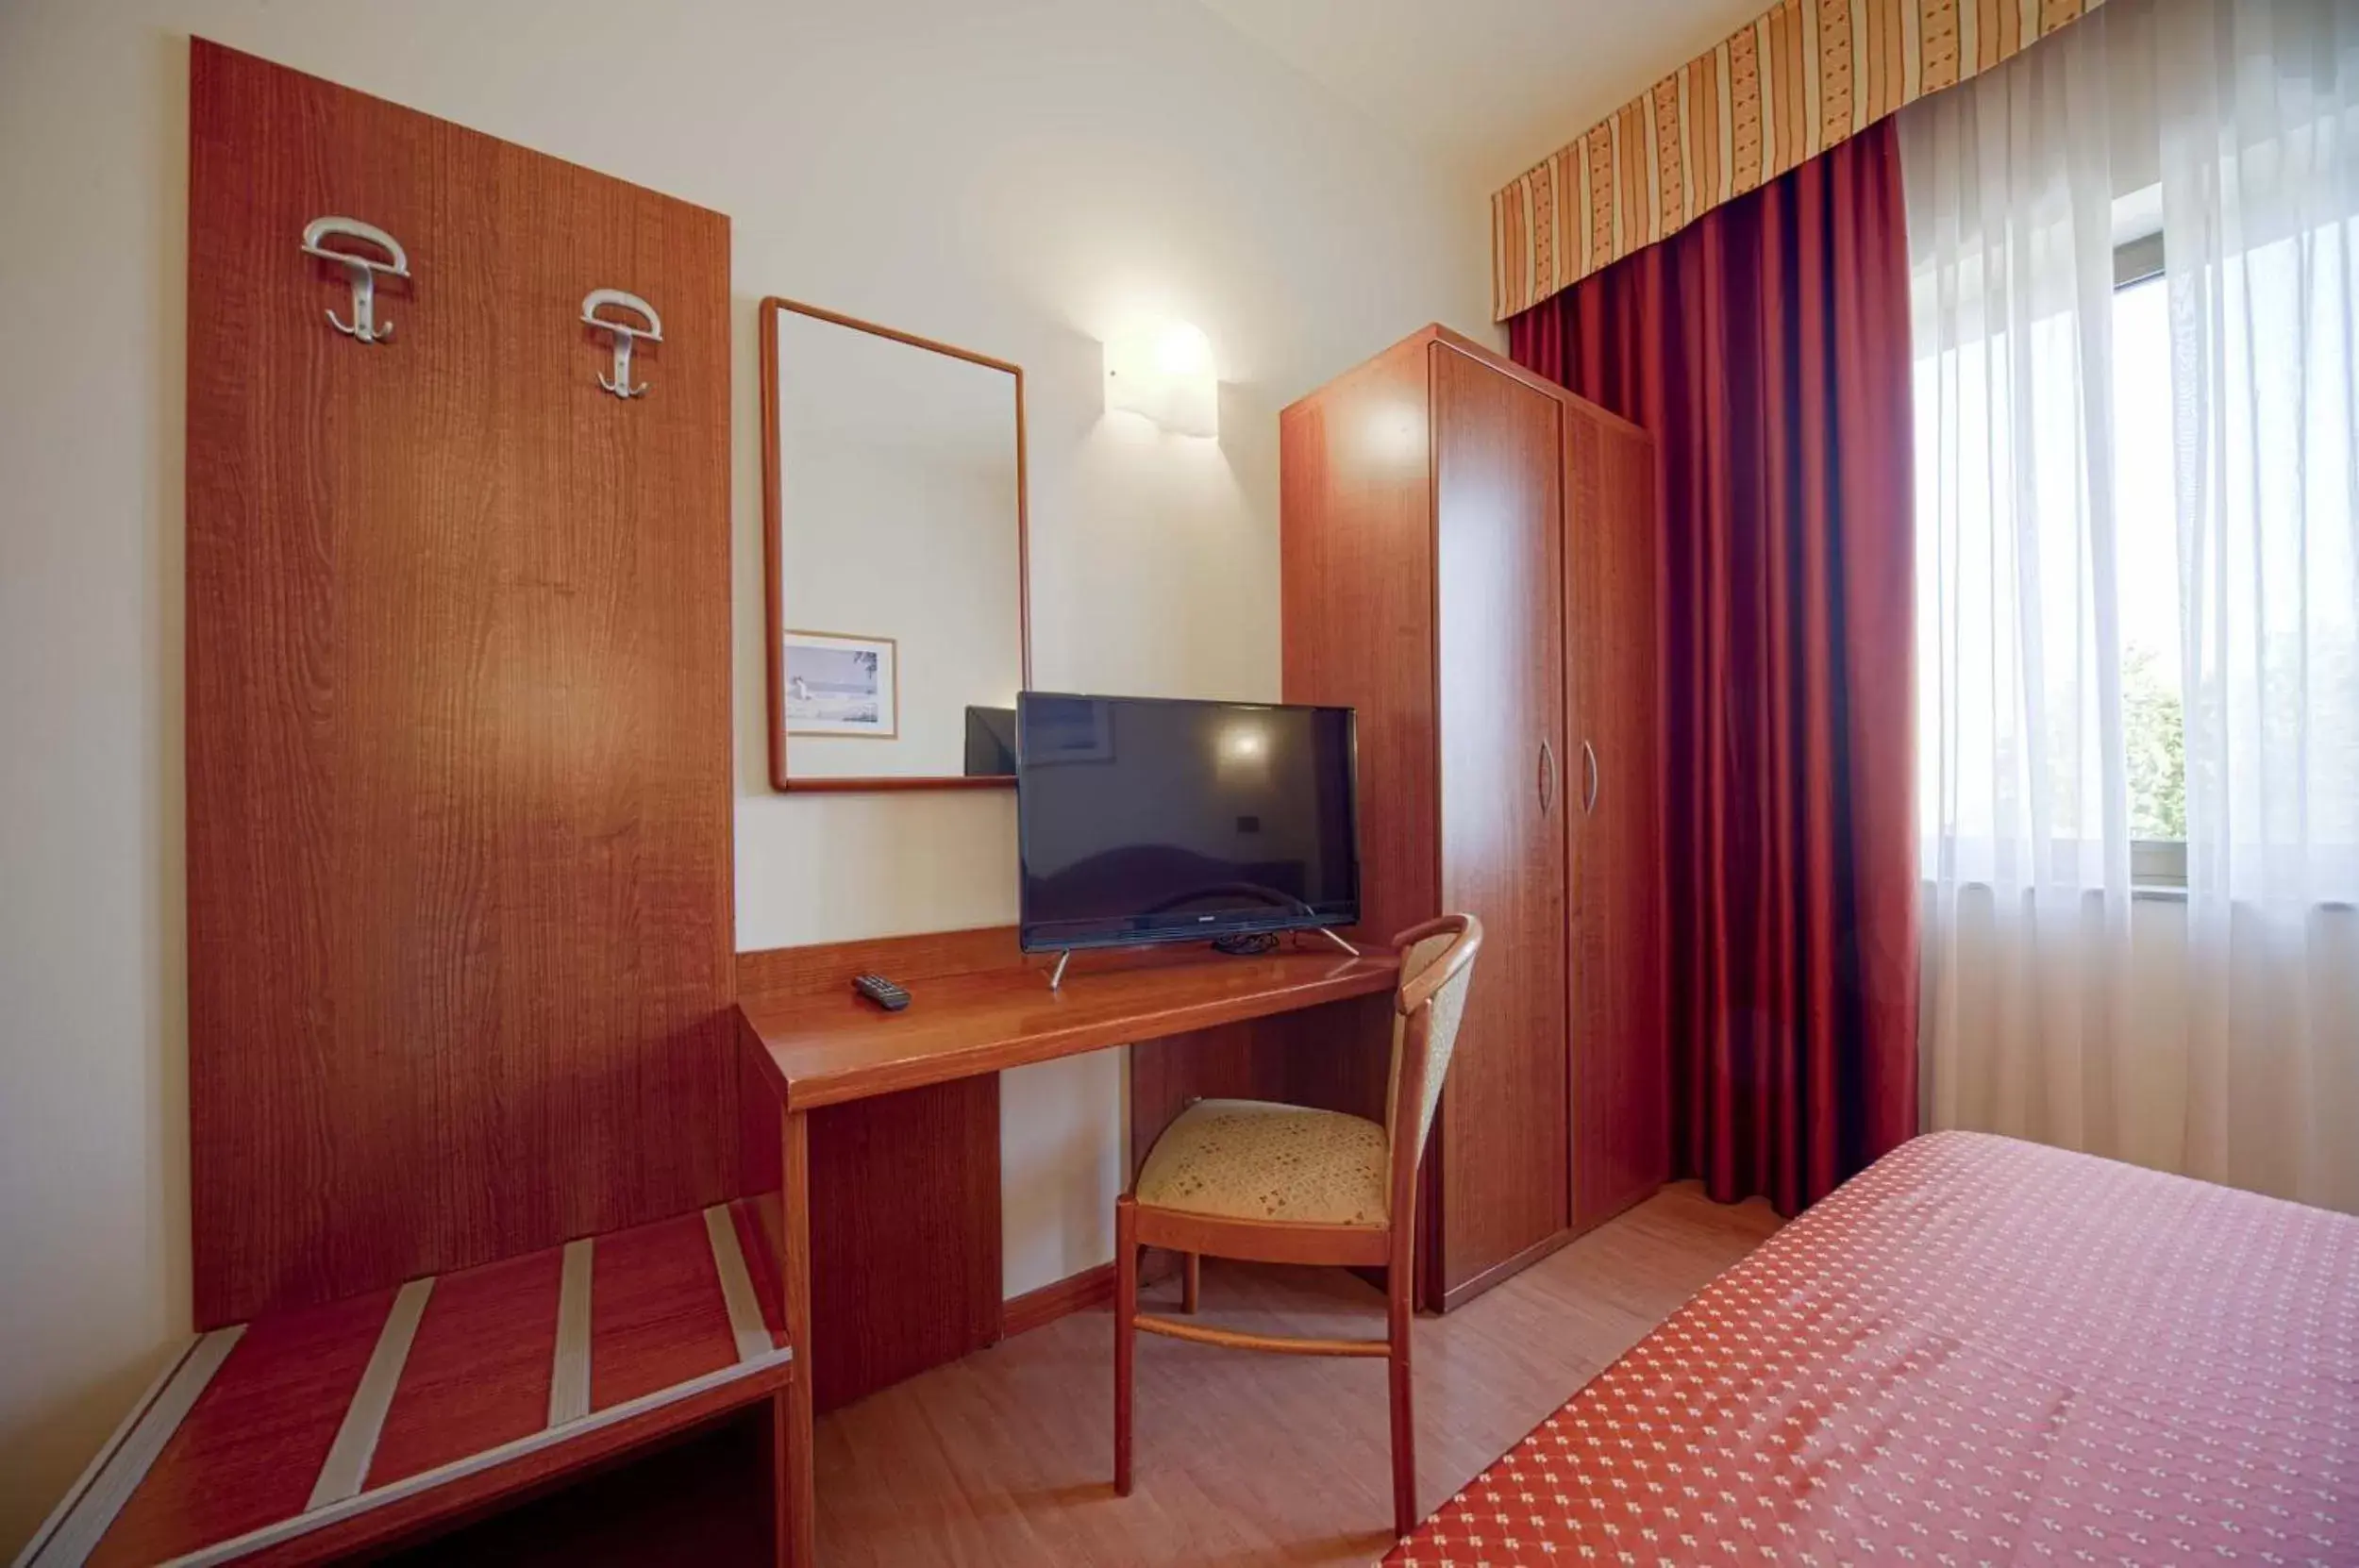 Bedroom in Hotel Centrale